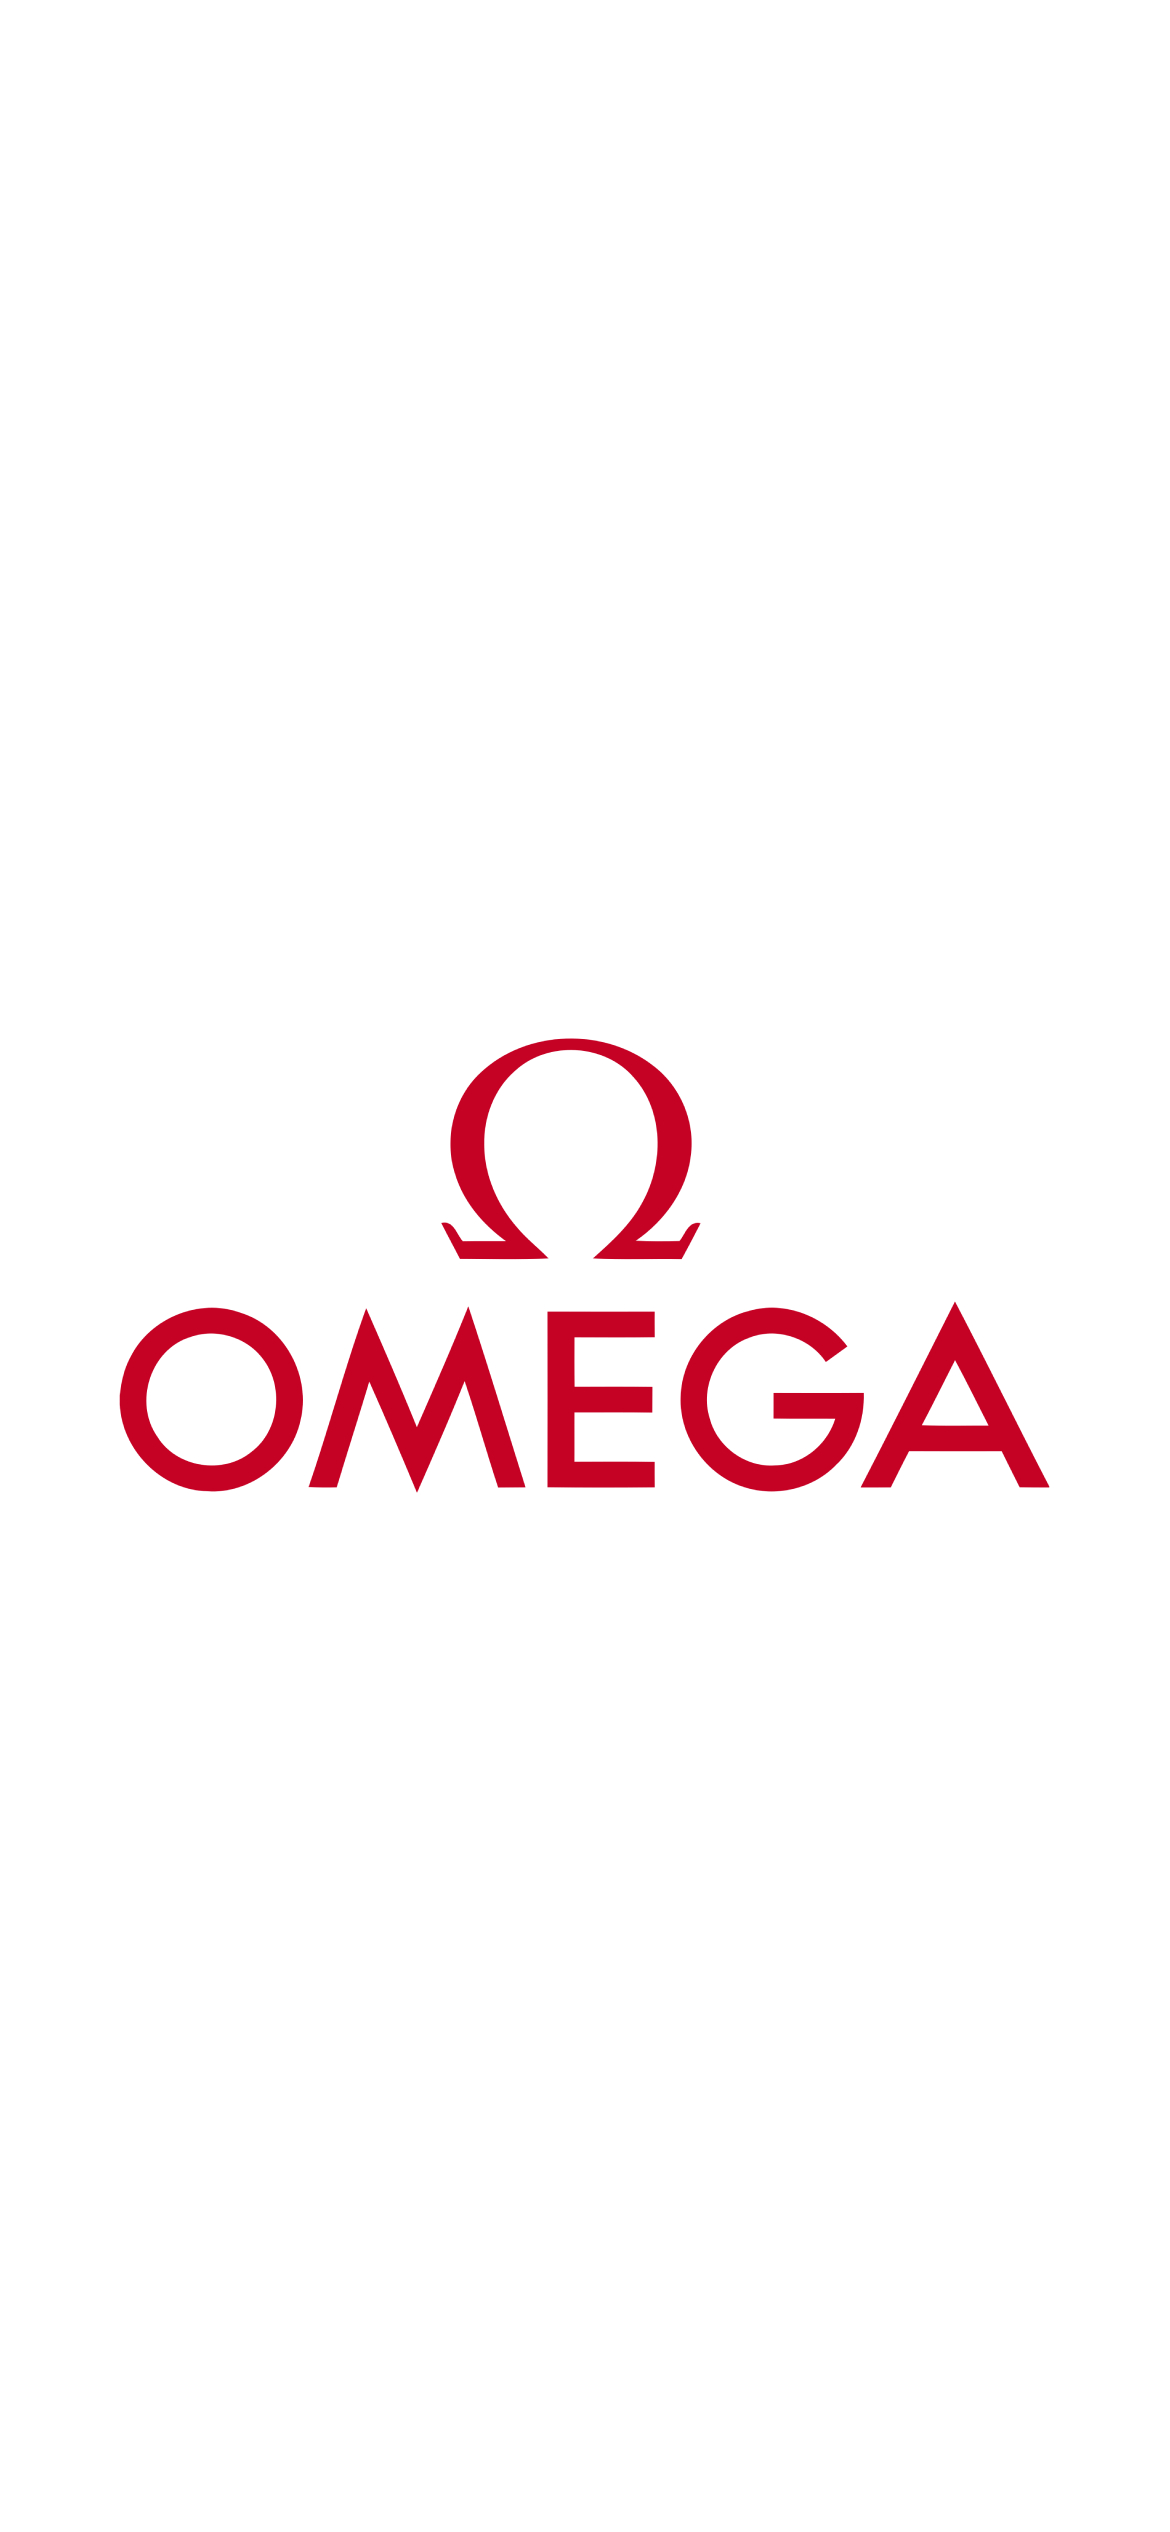 オメガ Omega Iphone 12 Pro 壁紙 待ち受け スマラン